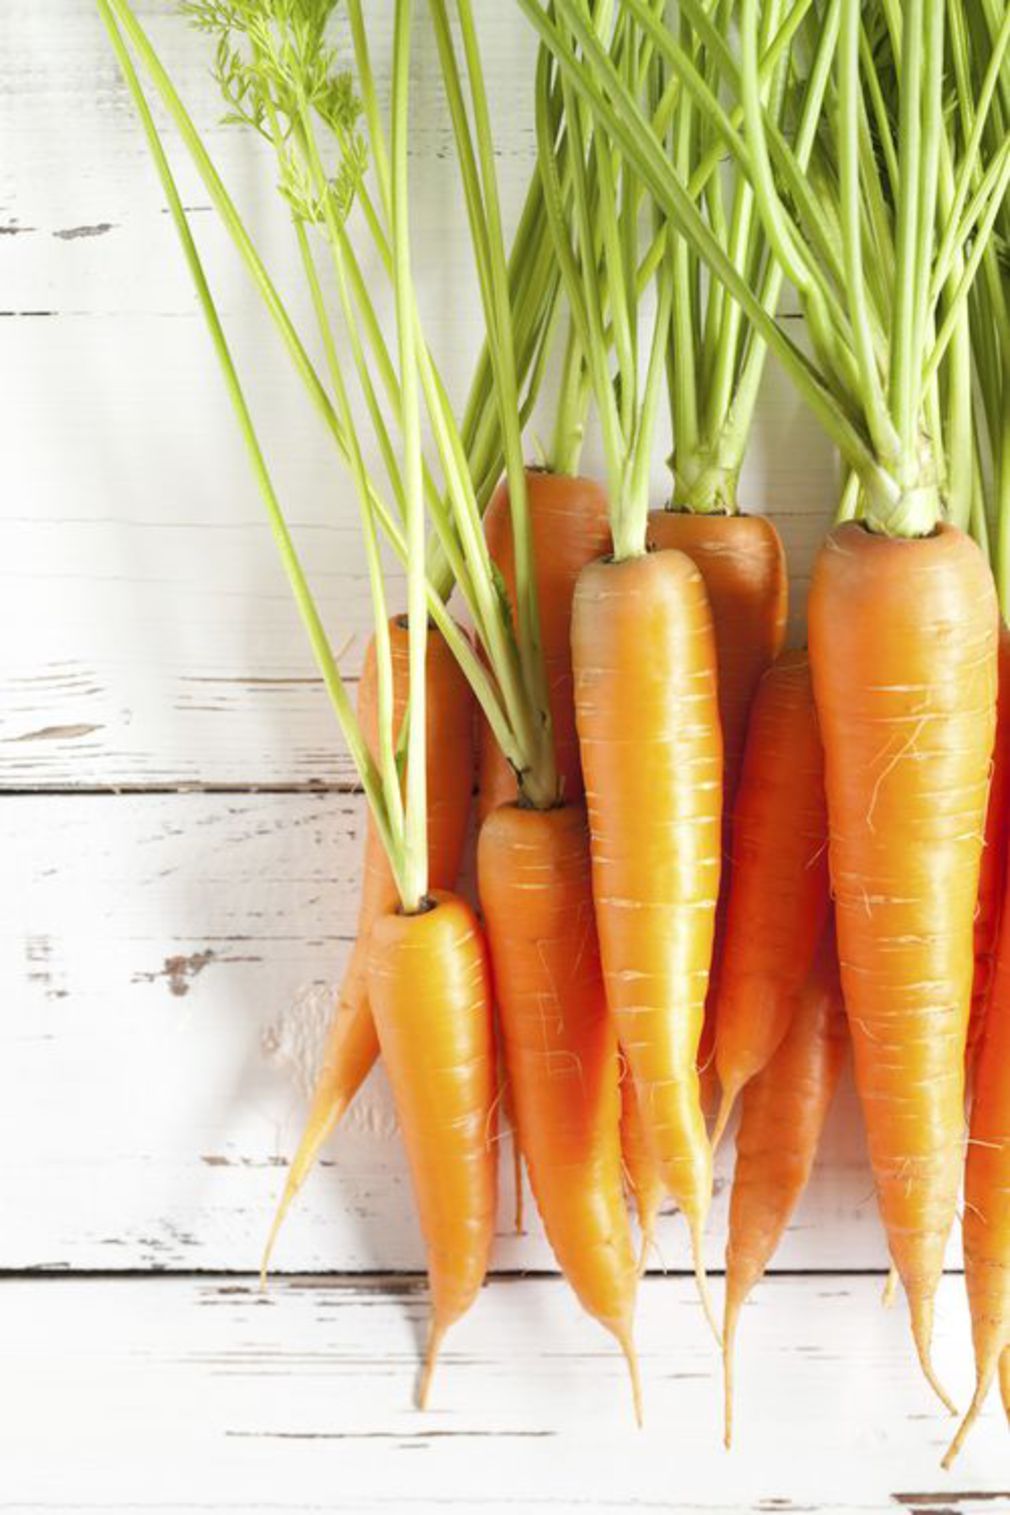 La-carotte.jpg